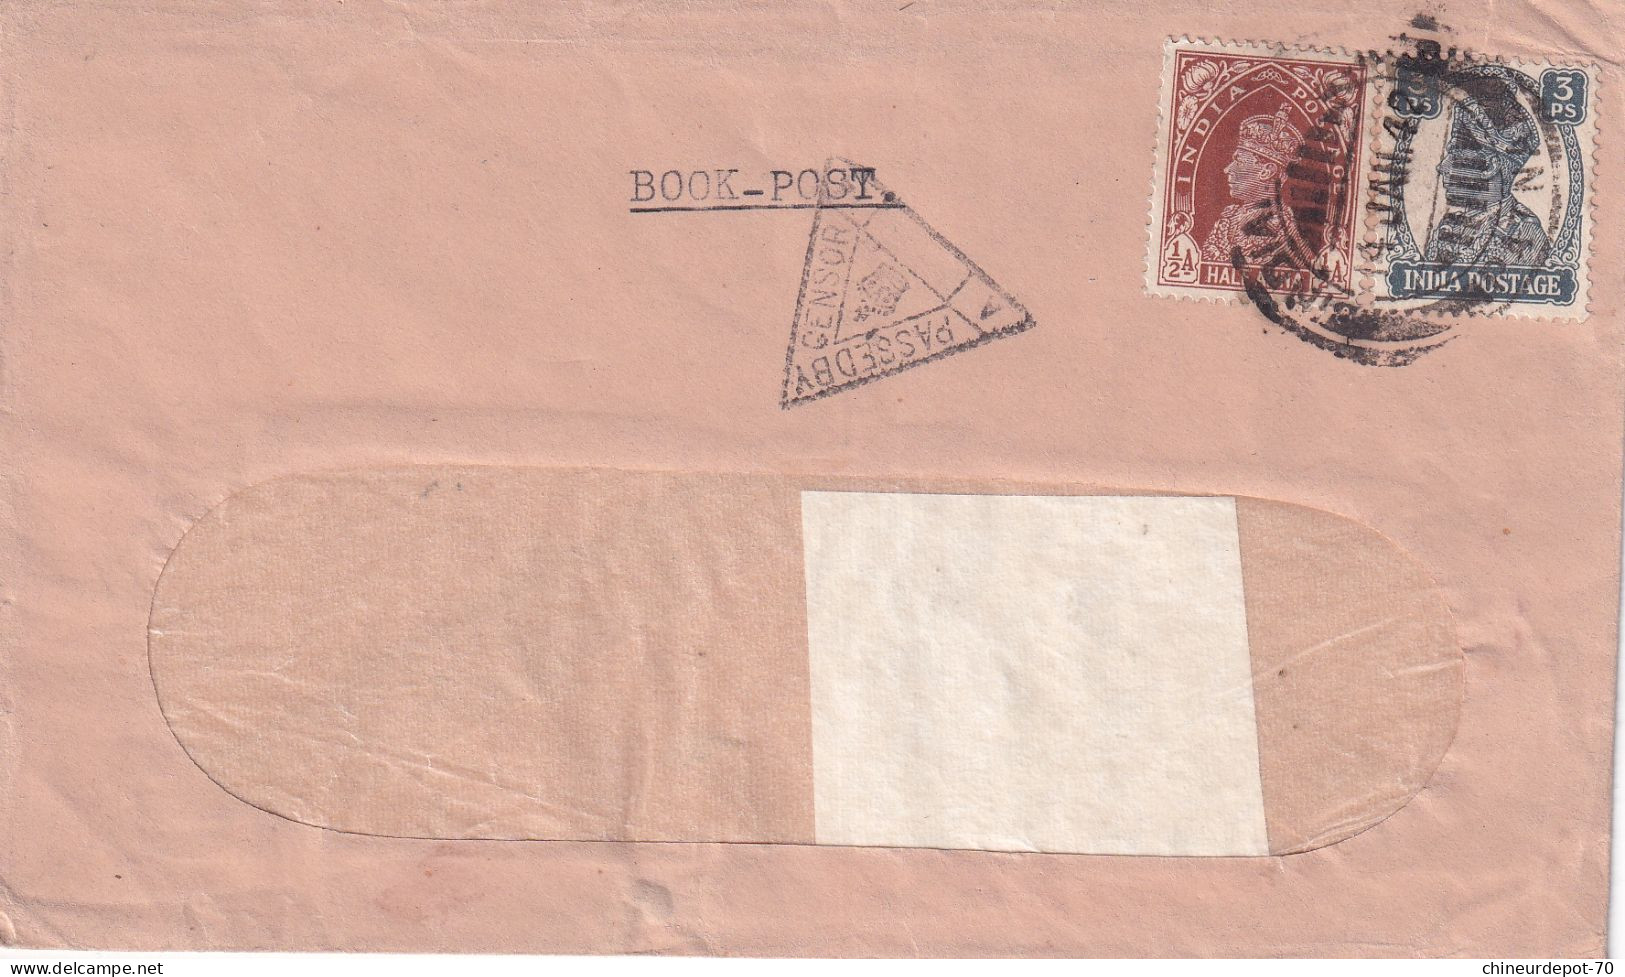 LIVRE-POST PASSÉ PAR 3 AFFRANCHISSEMENT INDLA INDLA POSTAGE Inde India 1942 Patna - Enveloppes